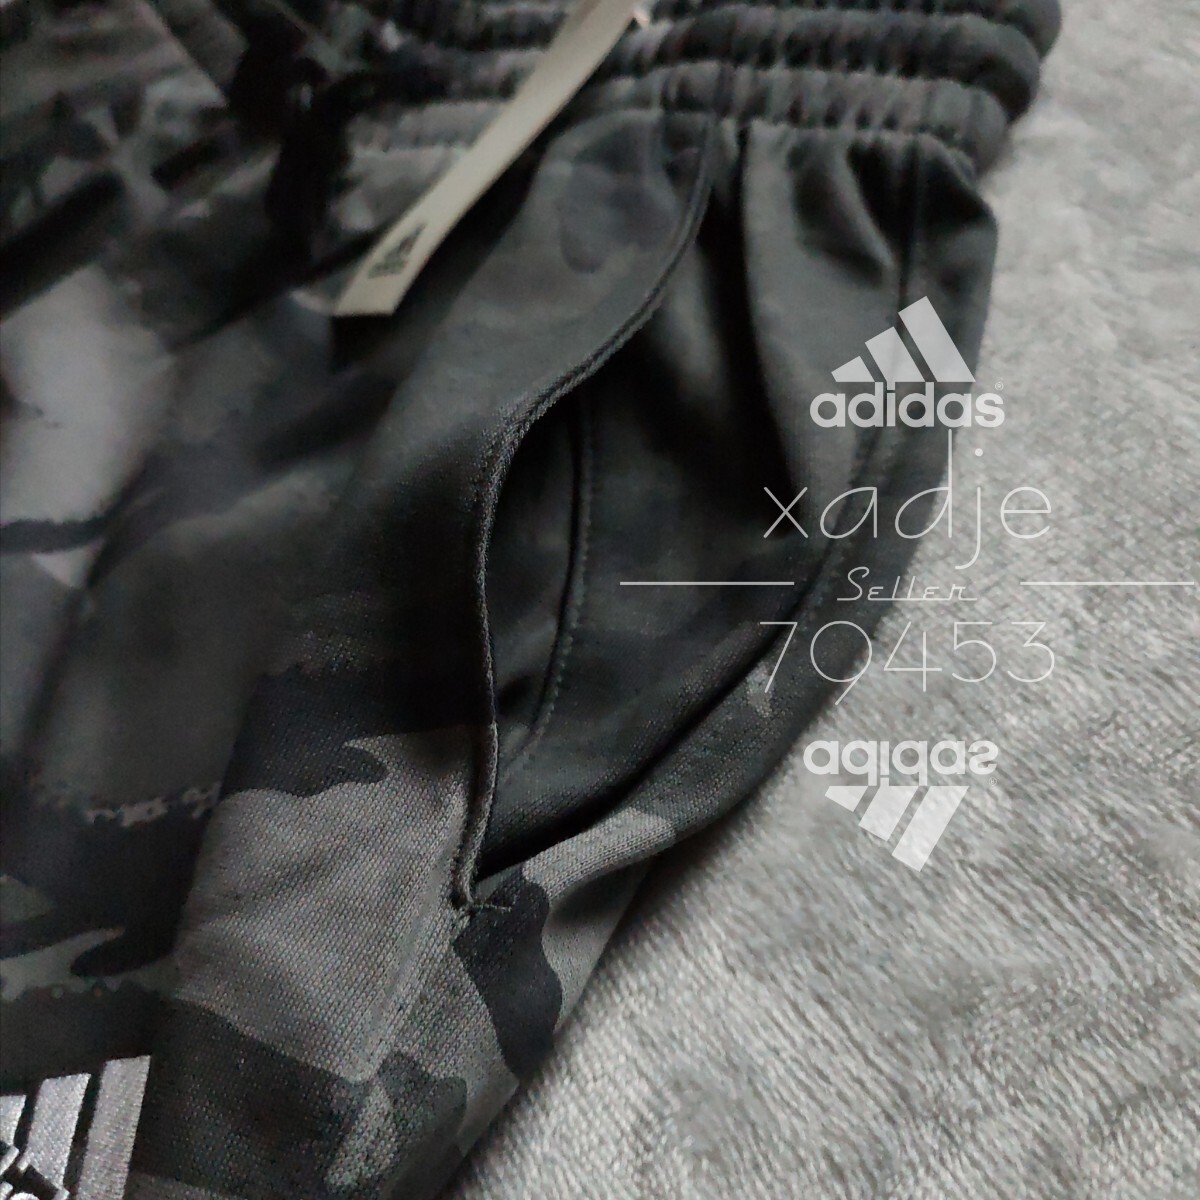 新品 正規品 adidas アディダス 上下セット スウェット セットアップ グレー チャコール 黒 ブラック ロゴ刺繍 総柄 迷彩 薄手 XL